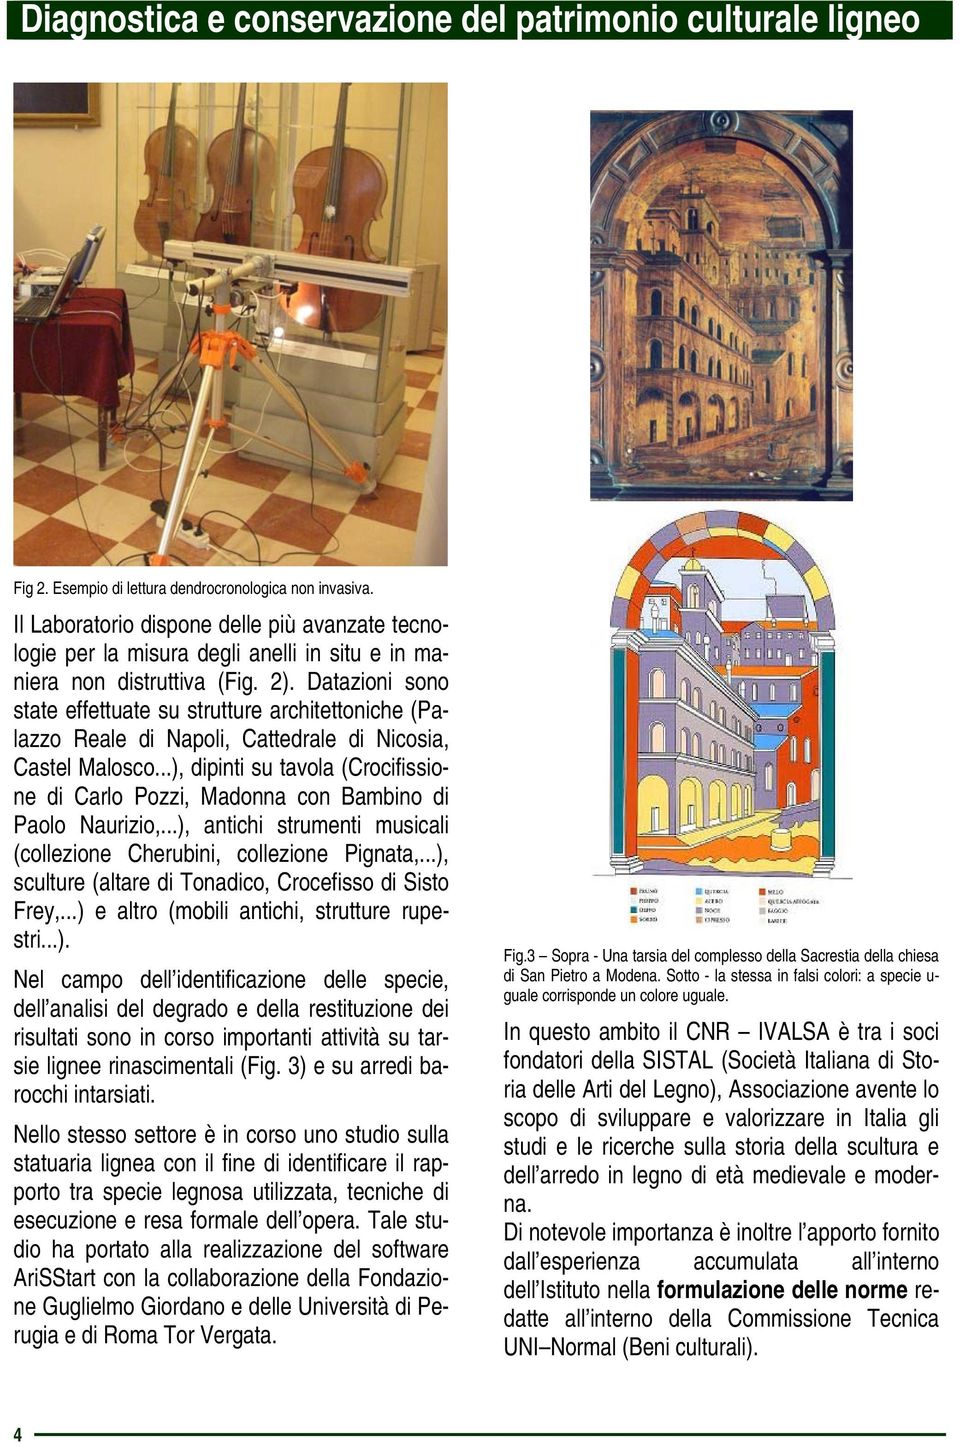 ..), dipinti su tavola (Crocifissione di Carlo Pozzi, Madonna con Bambino di Paolo Naurizio,...), antichi strumenti musicali (collezione Cherubini, collezione Pignata,.